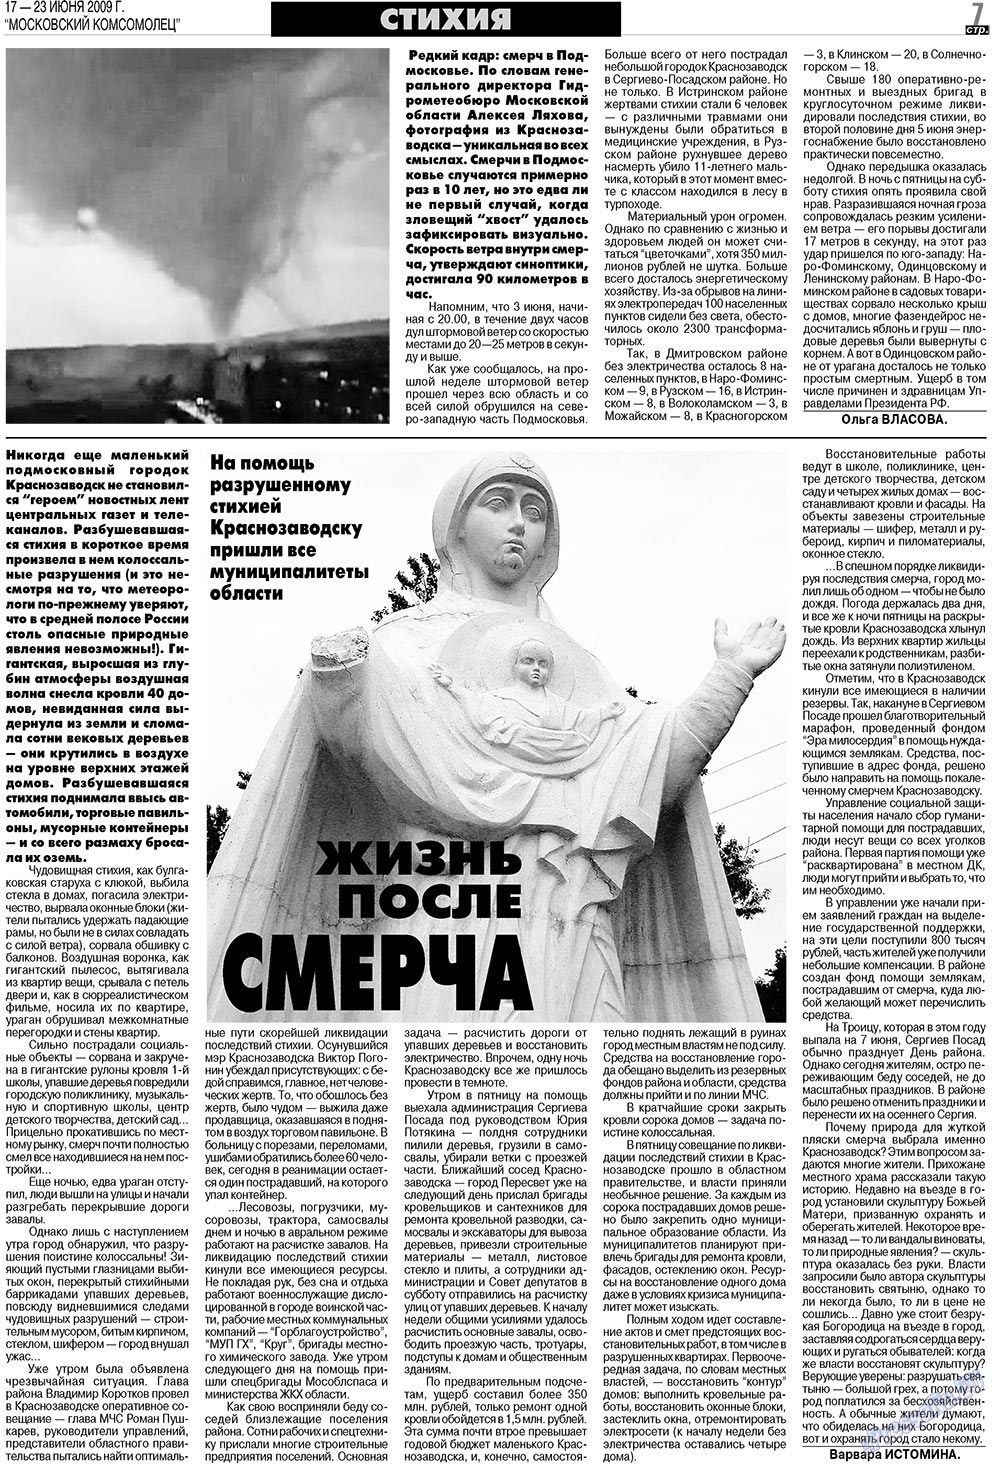 МК Испания, газета. 2009 №25 стр.7